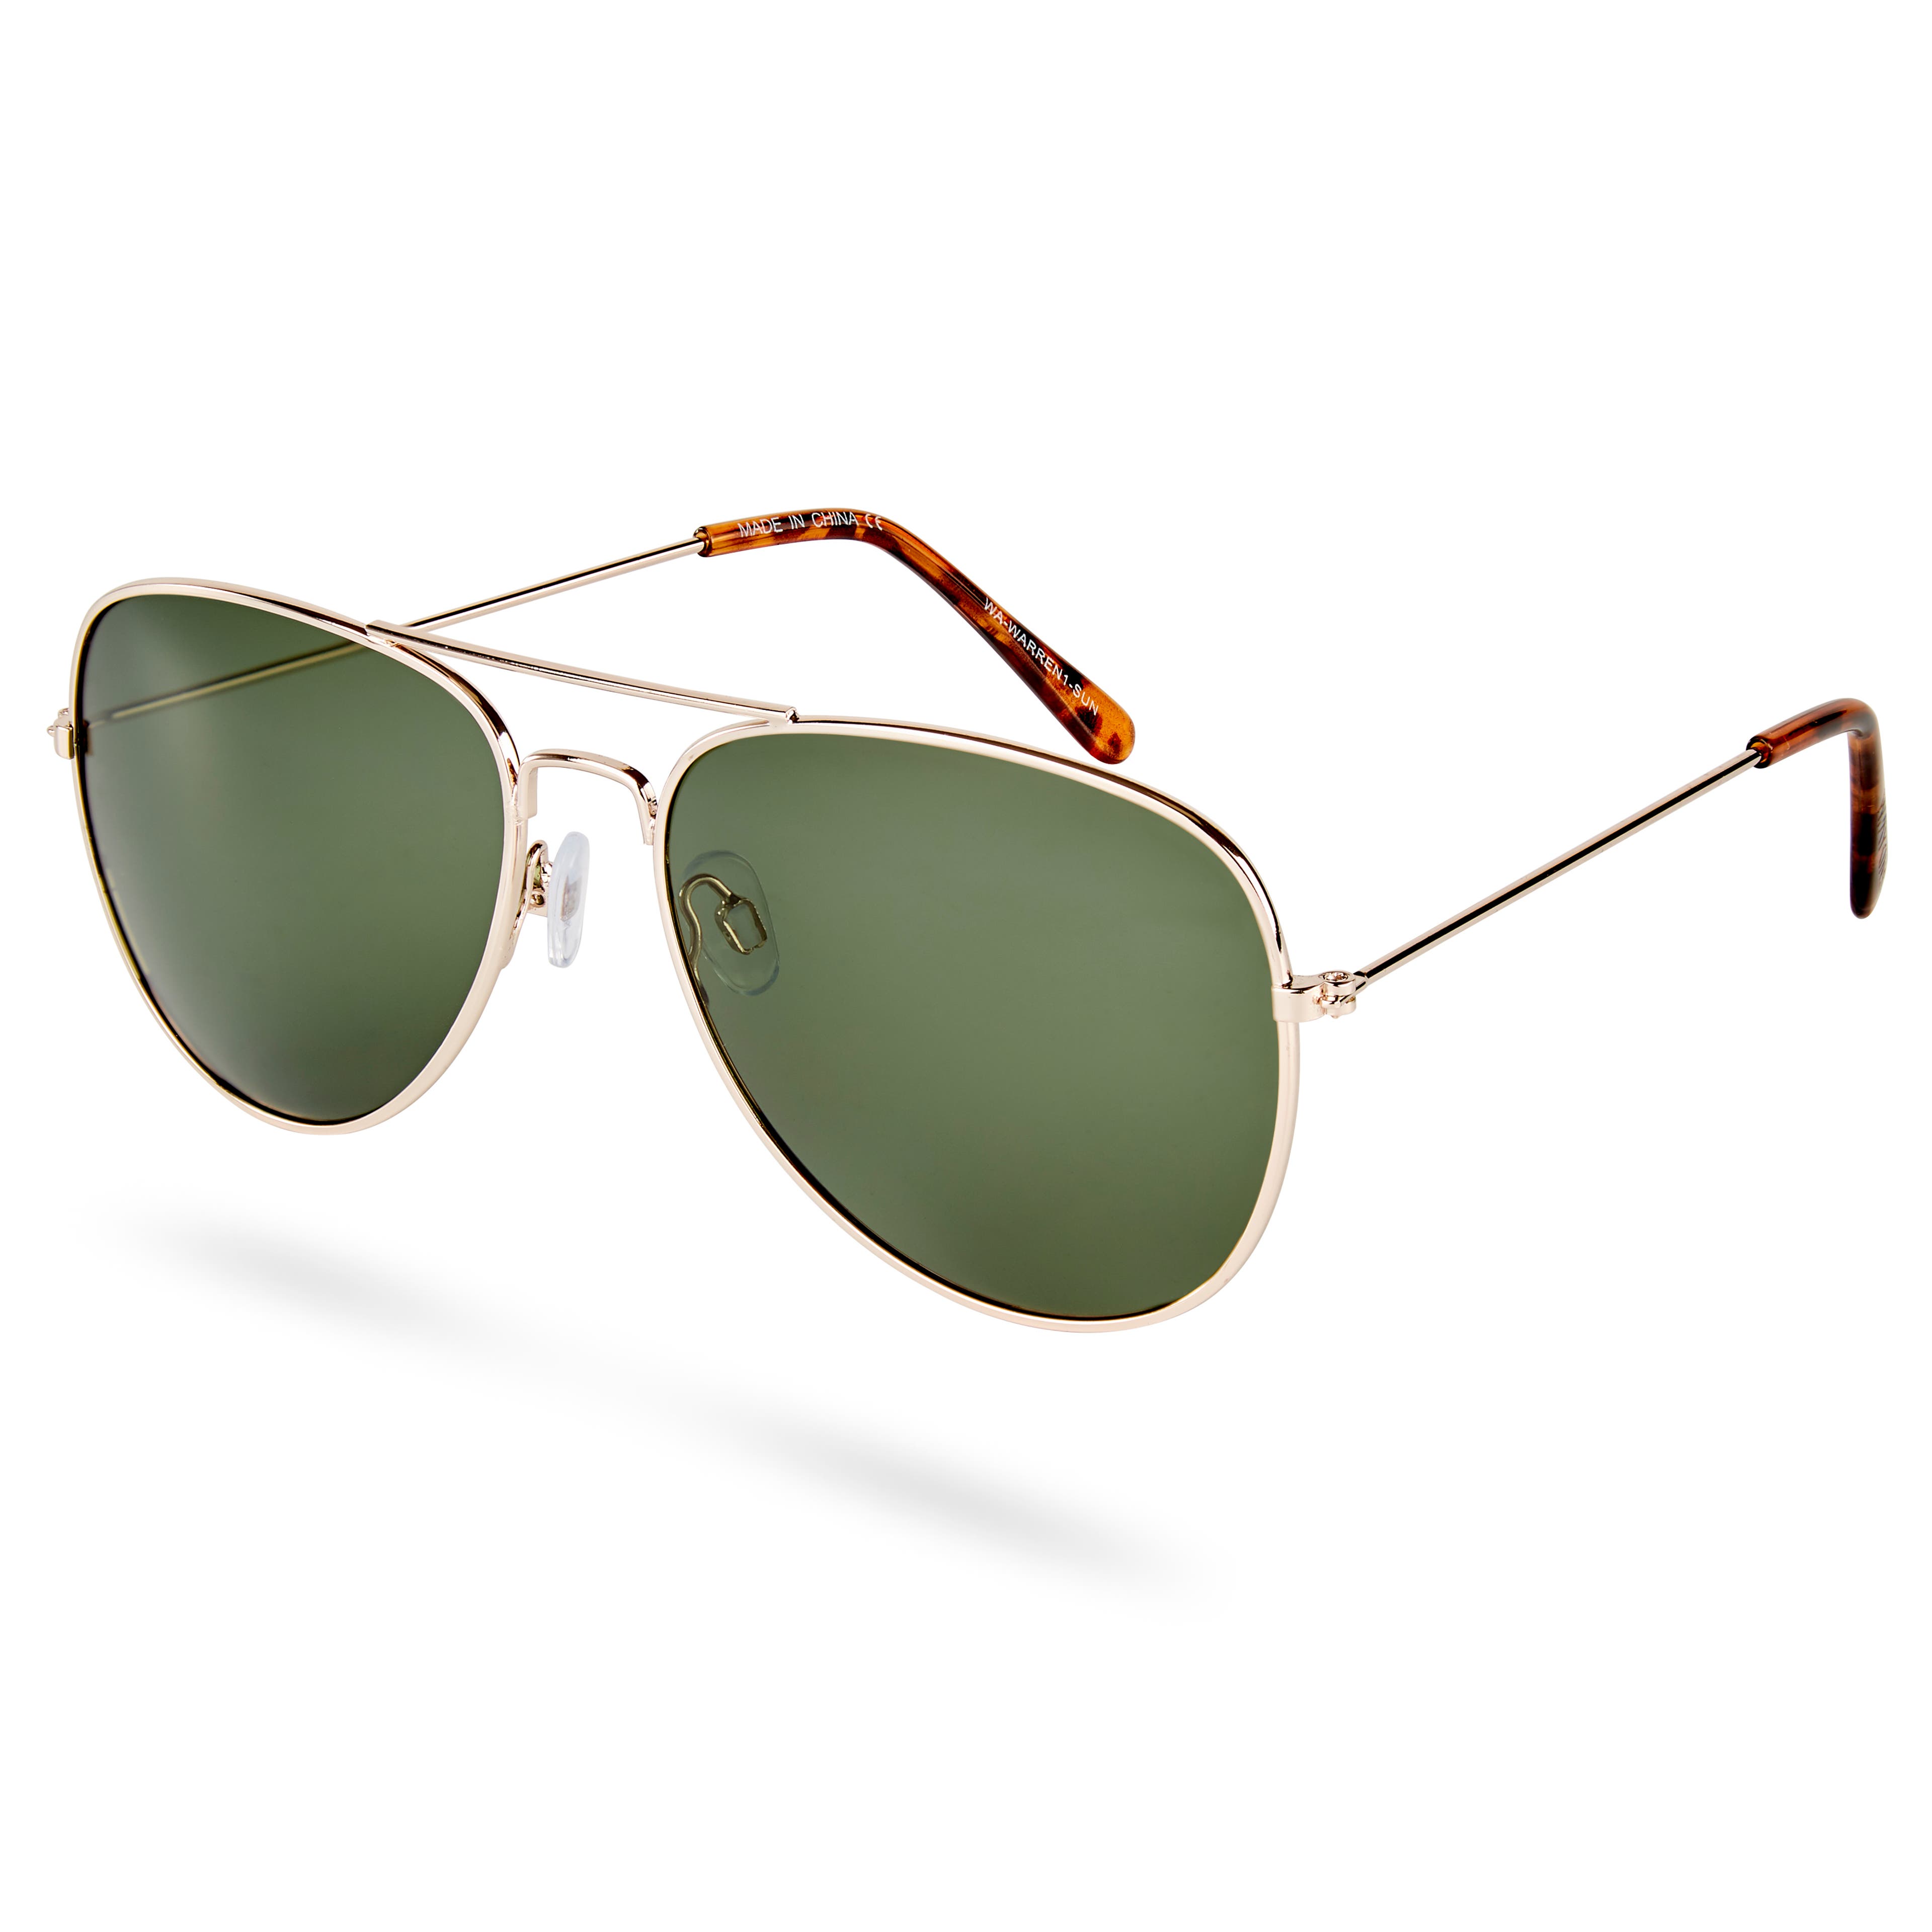 Авиаторски слънчеви очила Warren със златисти рамки и зелени стъкла